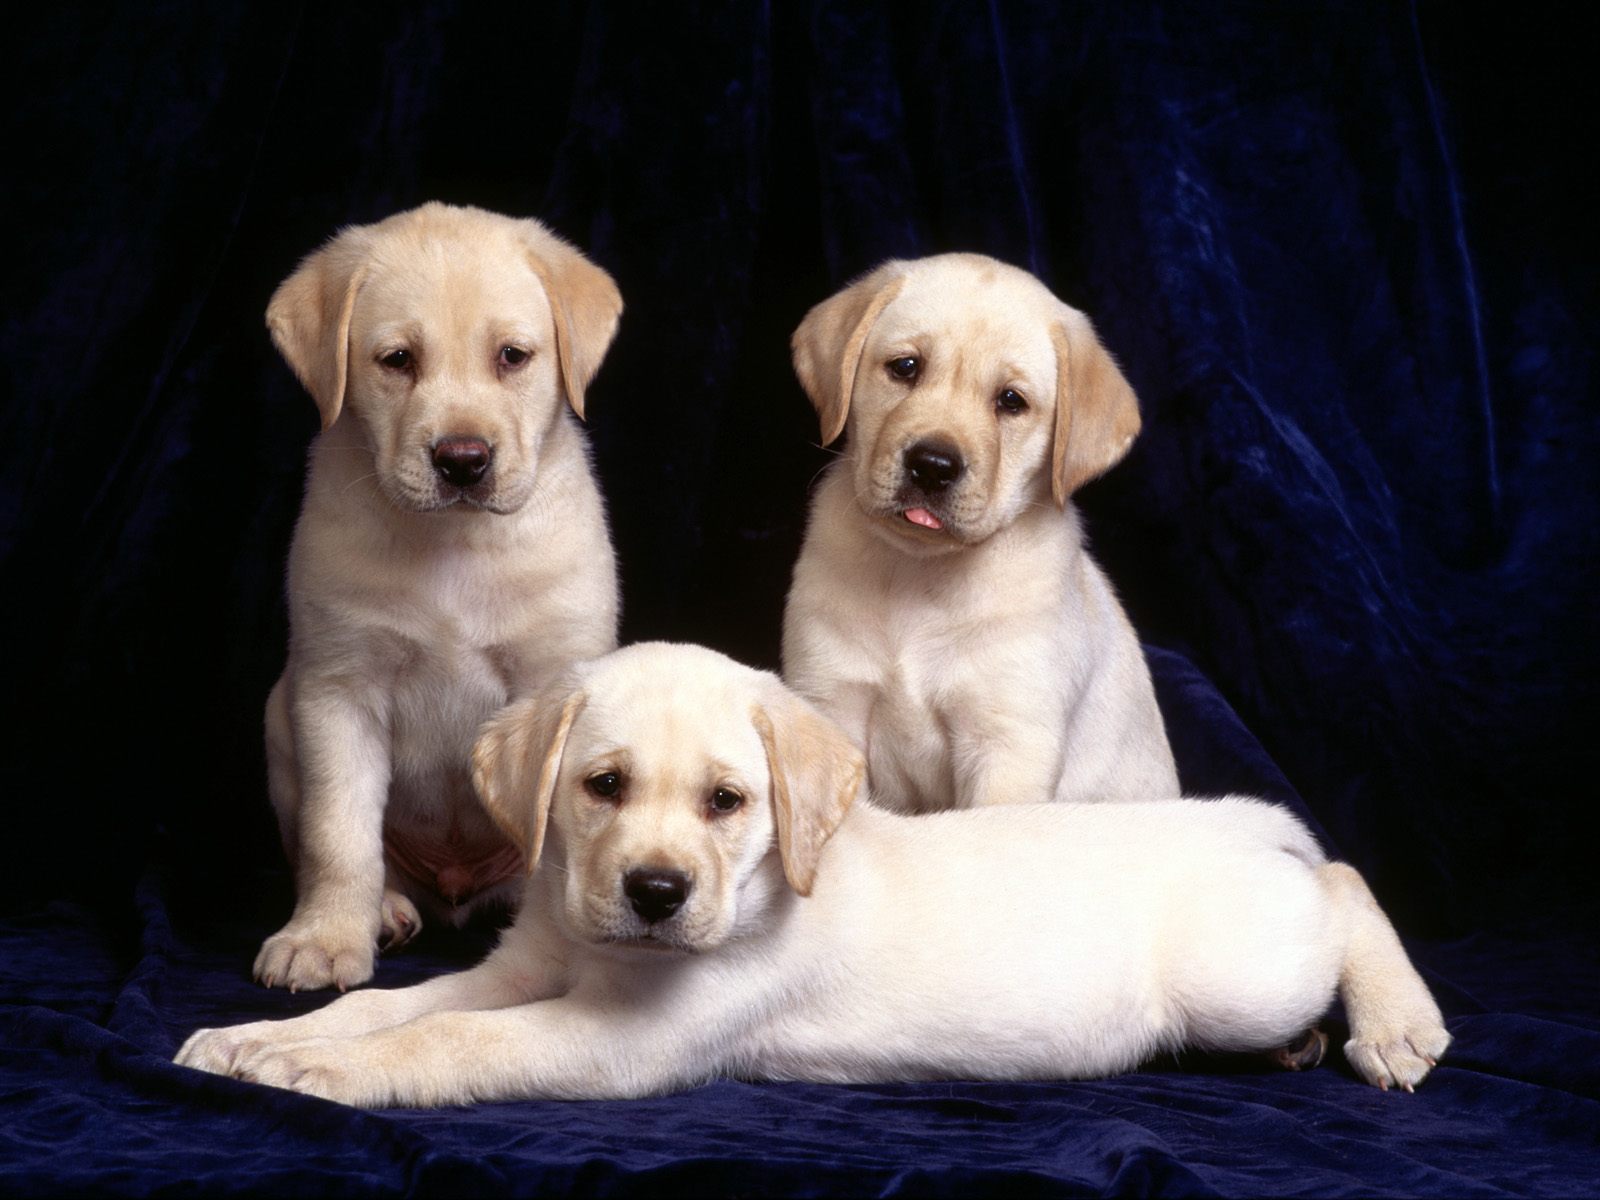 Download mobile wallpaper Dog, Animal, Labrador Retriever for free.